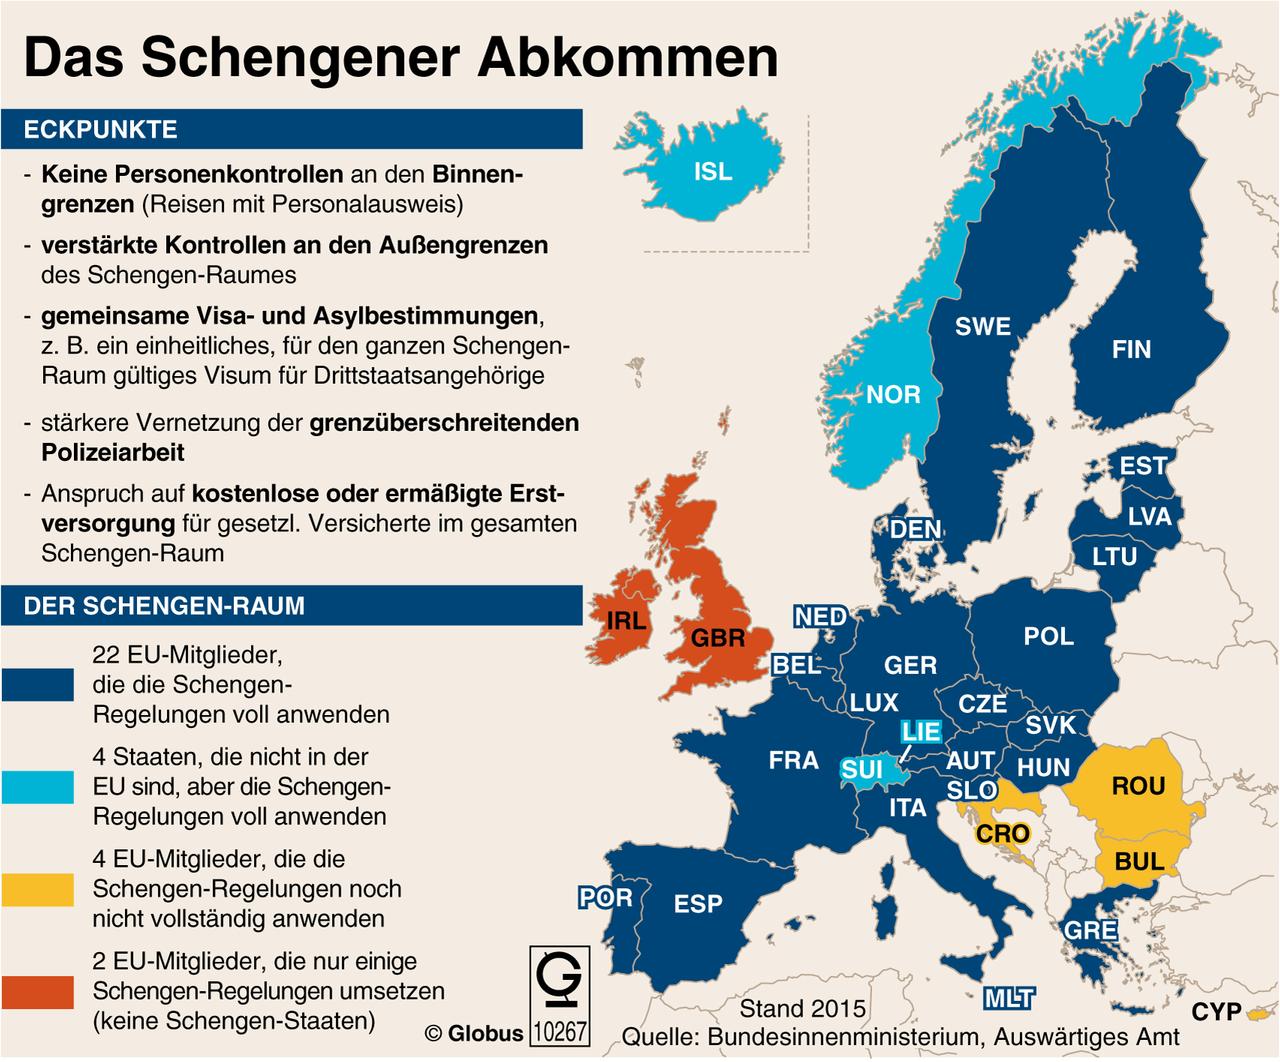 Grafik zu den Mitgliedsländern des Schengenraumes.